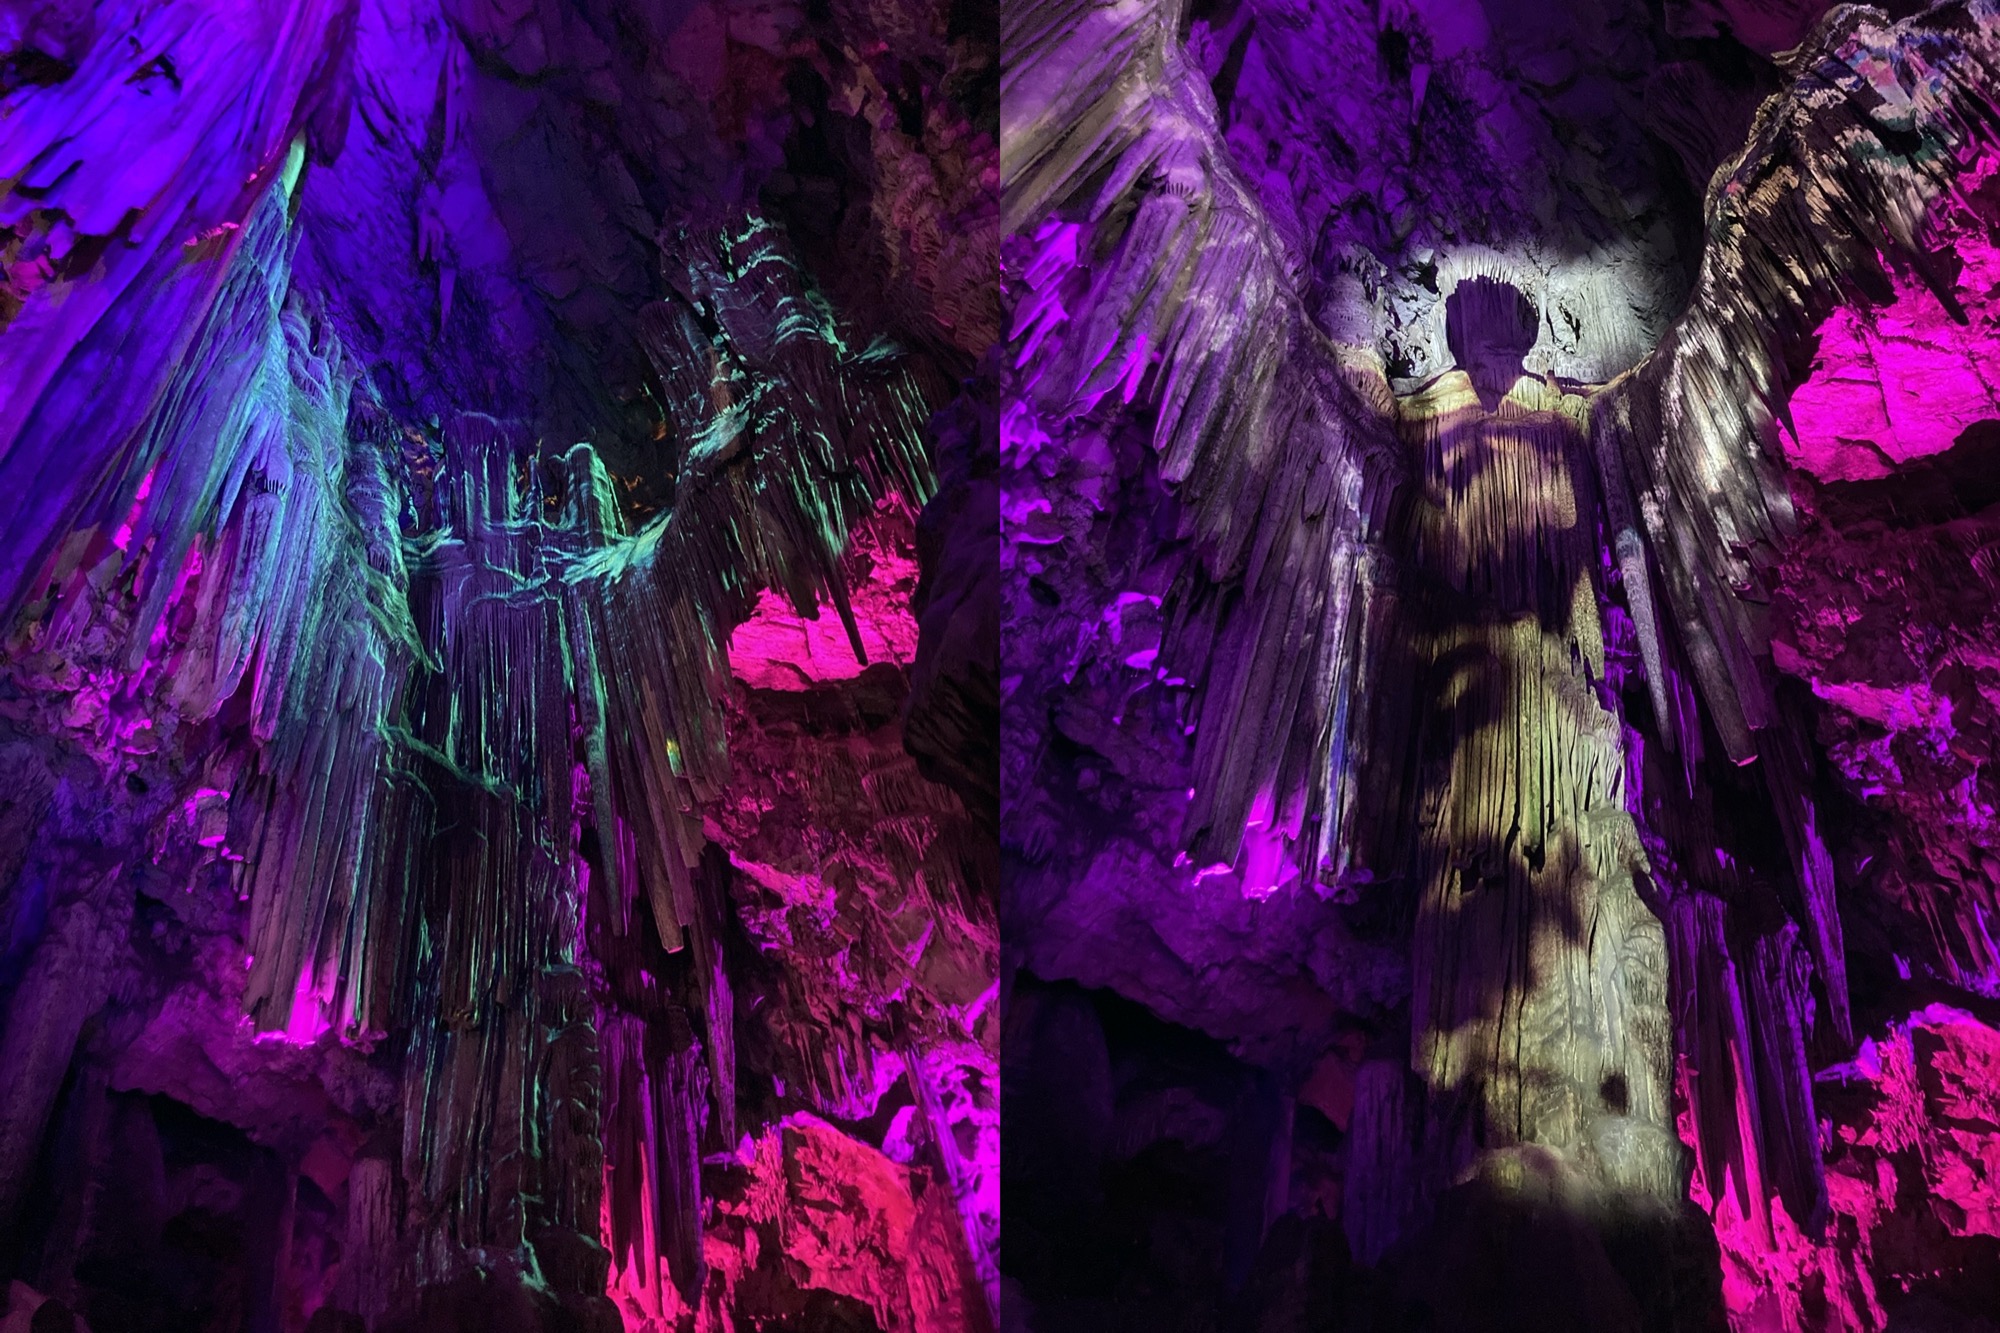 zwei Bilder nebeneinander, beide zeigen eine beleuchtete Felsformation, die einem Engel mit ausgebreiteten Flügeln ähnelt, im linken Bild ist der Engel mehr in türkis getaucht und der Kopf nicht deutlich zu erkennen, im rechten Bild hebt sich der in weiß getauchte Engel inkl. Kopf deutlich von der restlichen Felswand in violett und pink ab